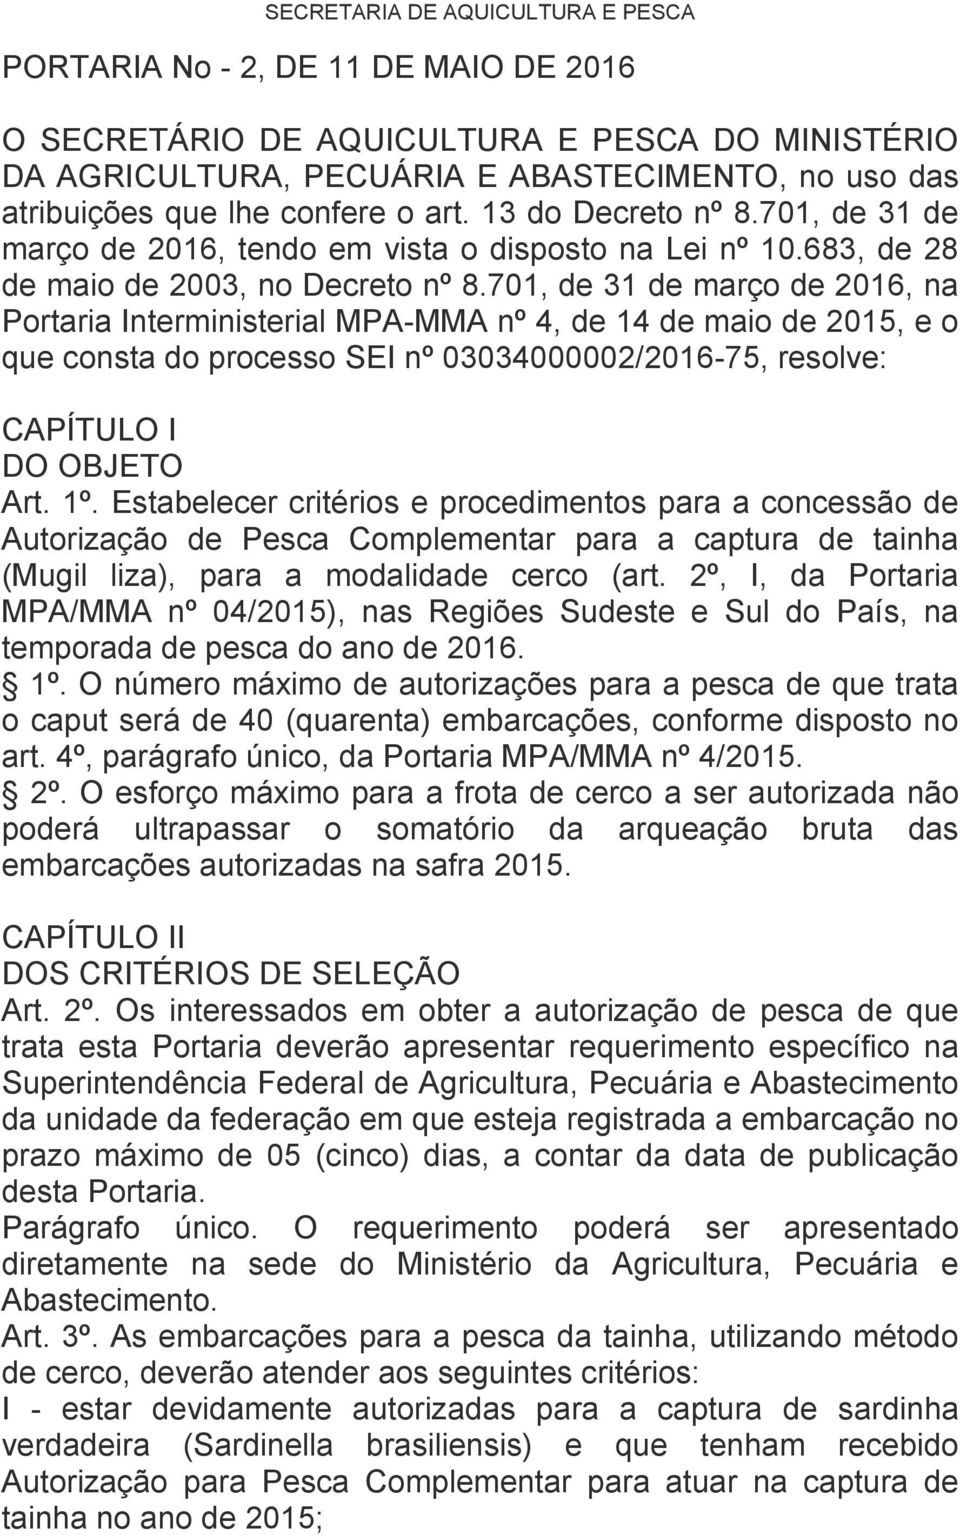 701, de 31 de março de 2016, na Portaria Interministerial MPA-MMA nº 4, de 14 de maio de 2015, e o que consta do processo SEI nº 03034000002/2016-75, resolve: CAPÍTULO I DO OBJETO Art. 1º.